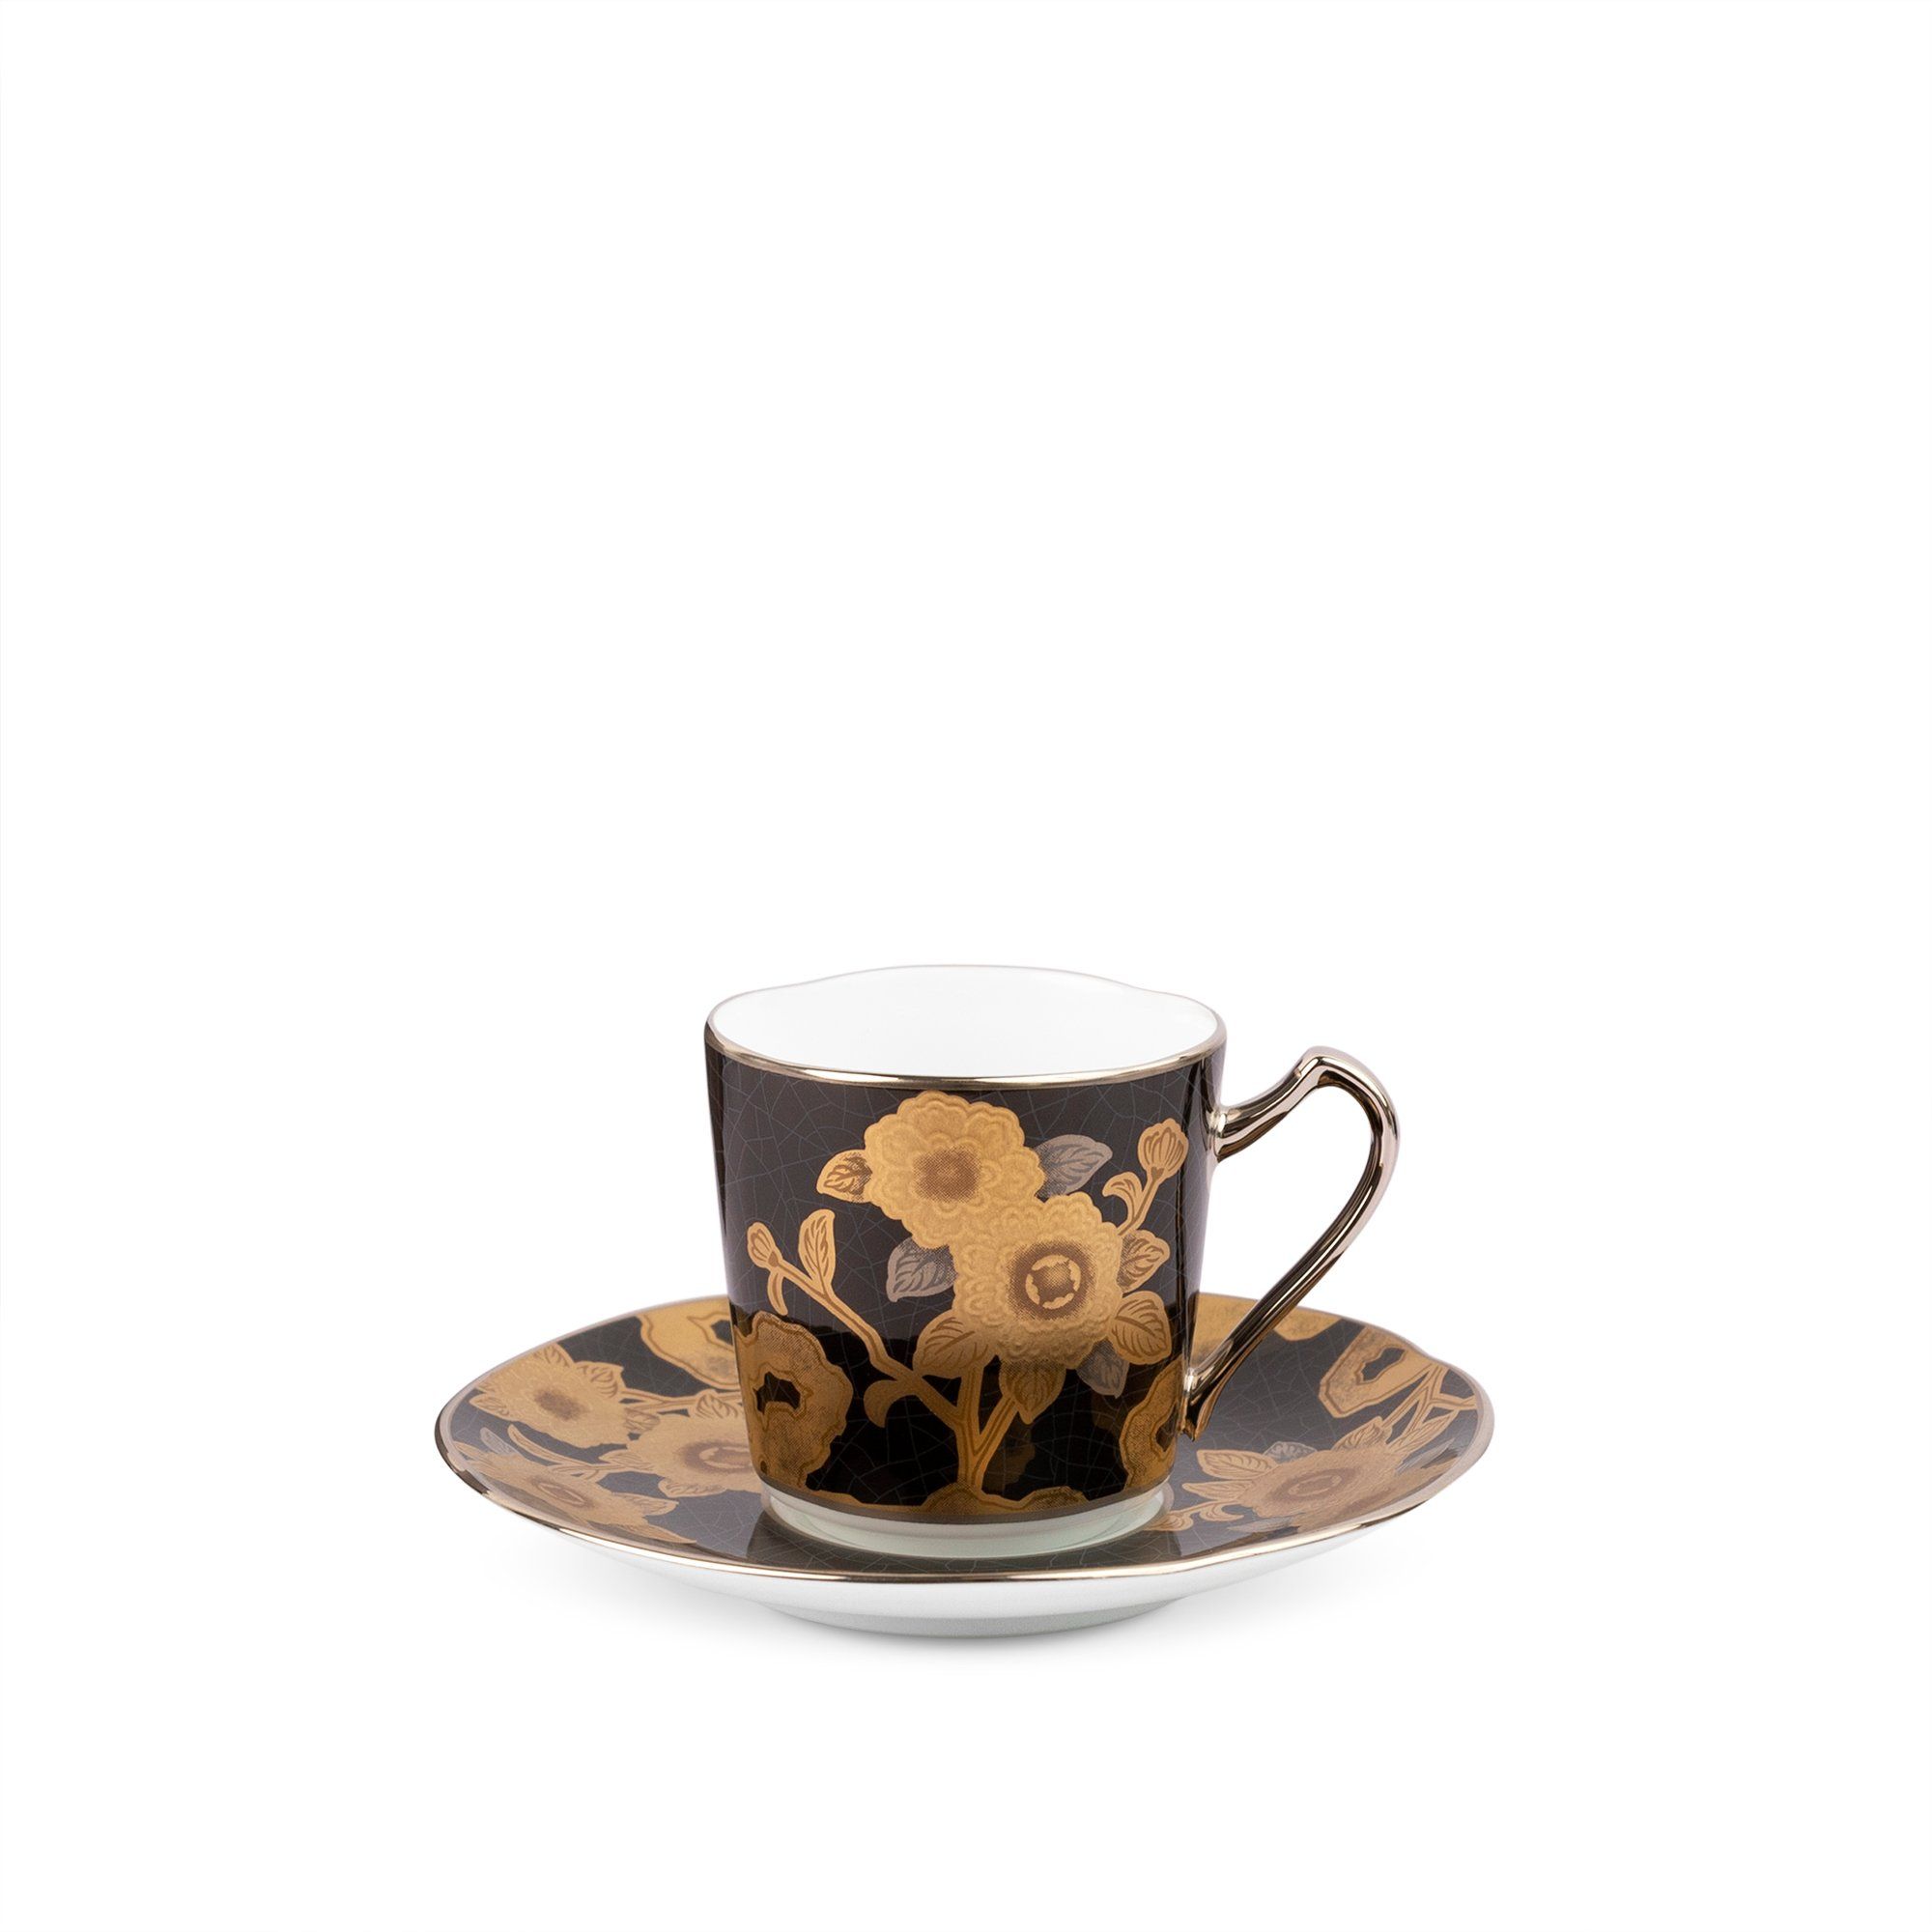  Chén trà (tách trà) kèm đĩa lót dung tích 85ml sứ trắng cao cấp | The Homage Collection H-767J-T2404 